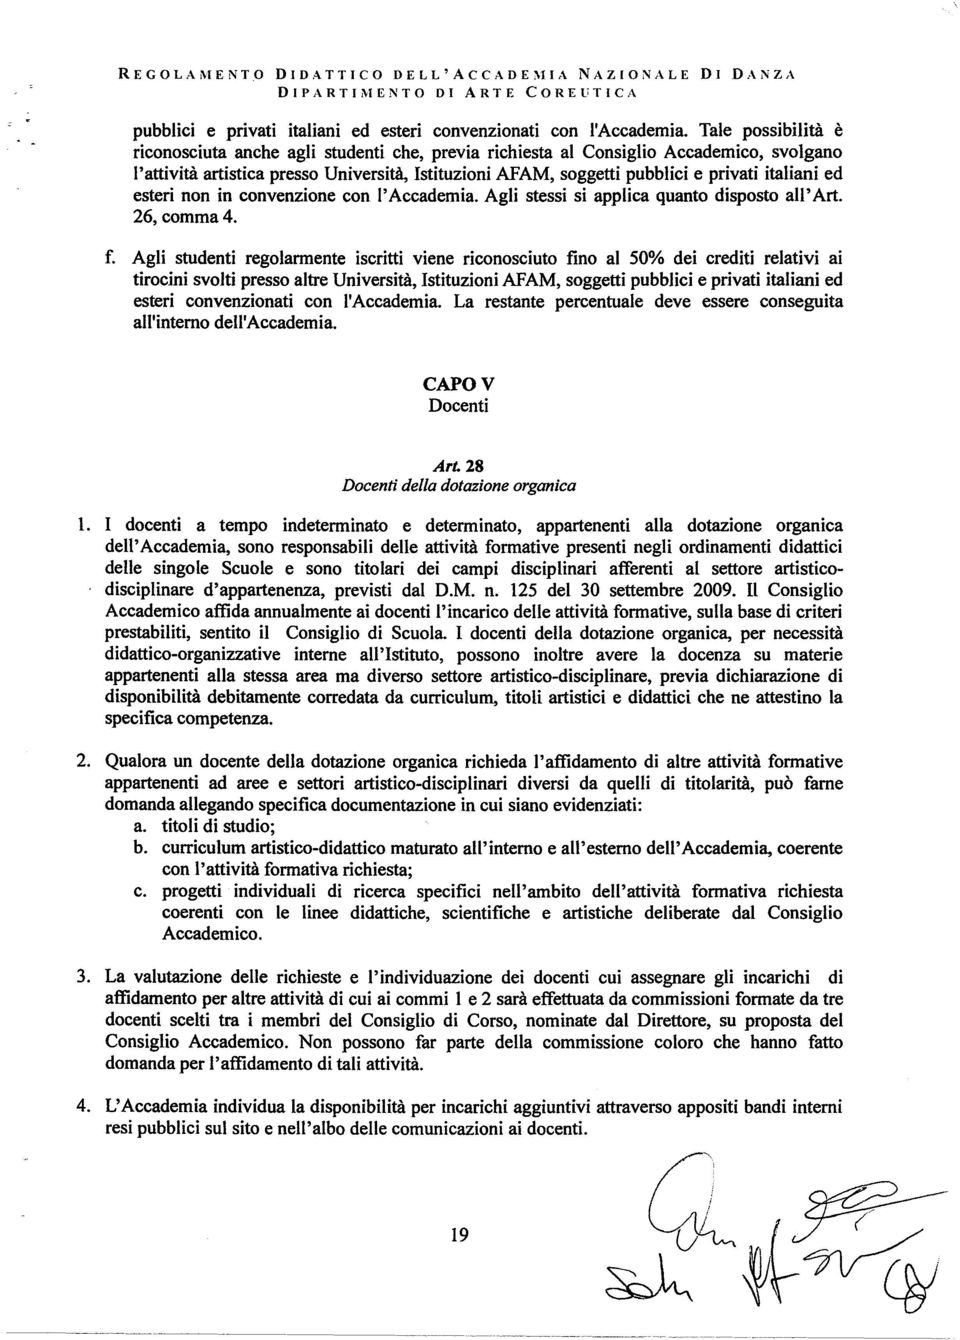 italiani ed esteri non in convenzione con l'accademia. Agli stessi si applica quanto disposto ali' Art. 26, comma 4. f.